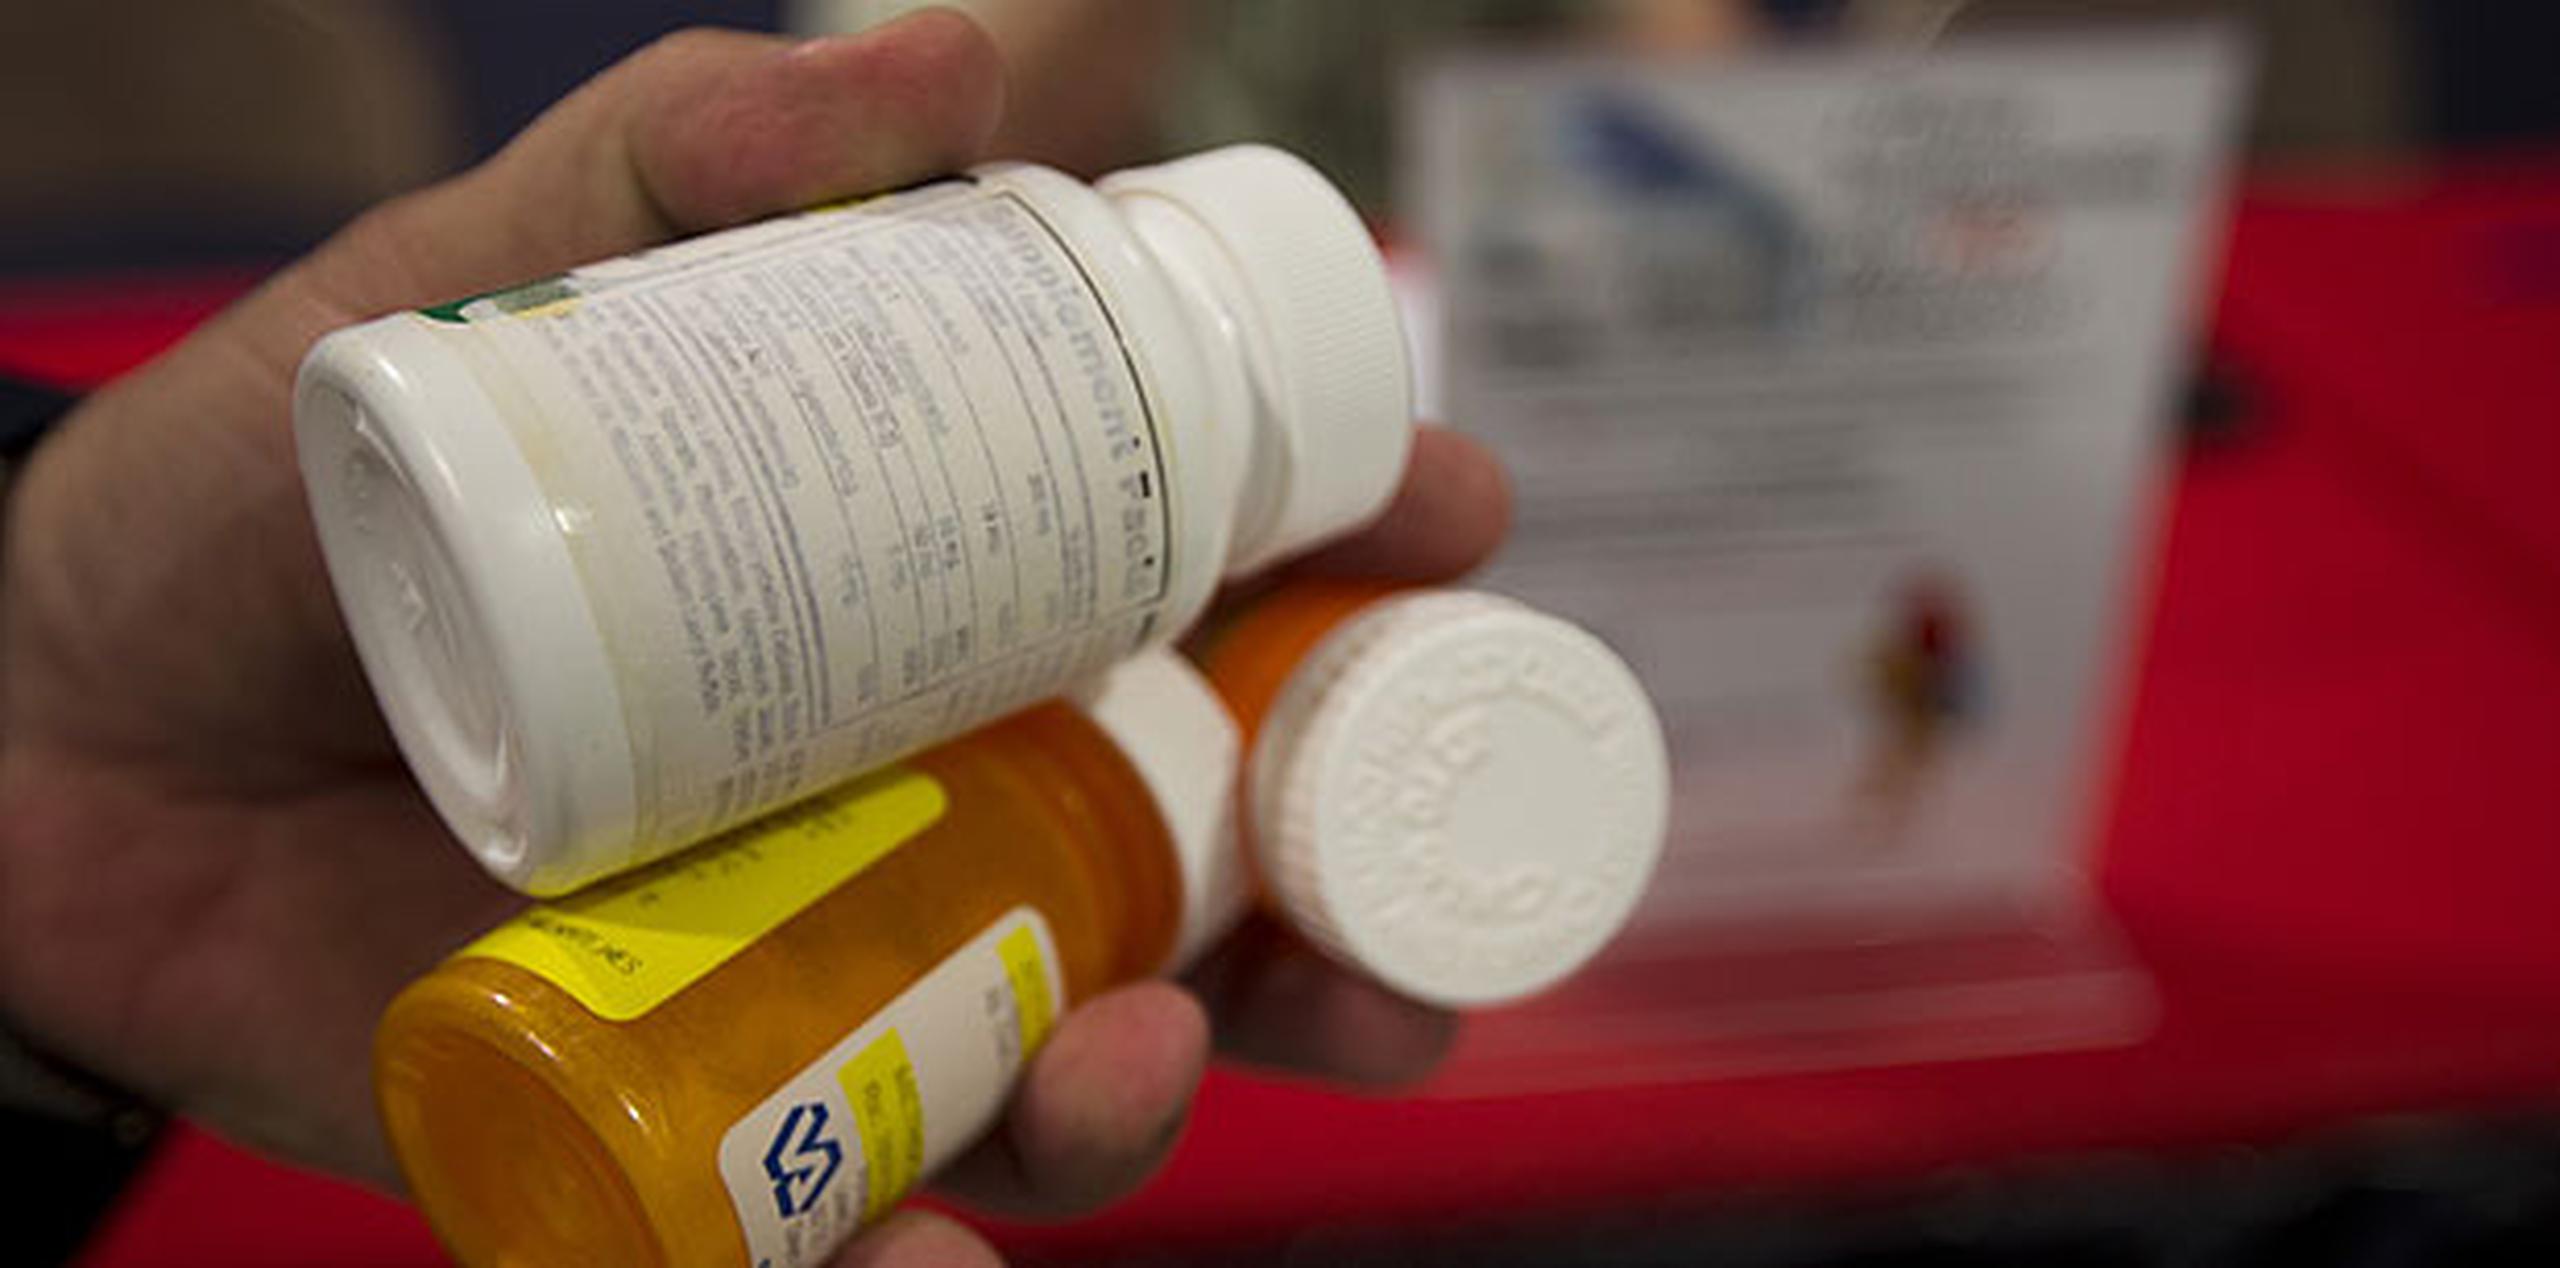 La aprobación al aumento en ciertos fármacos ha ocurrido entre el 11 de marzo y el 29 de septiembre de este año. (Archivo)